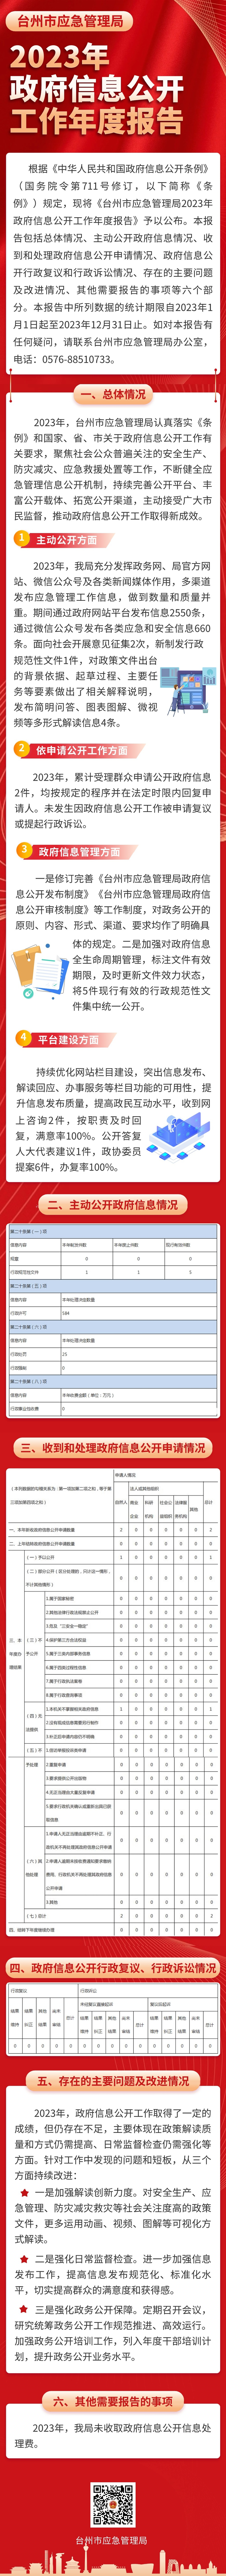 台州市应急管理局2023年政府信息公开工作年度报告（图解）.jpg